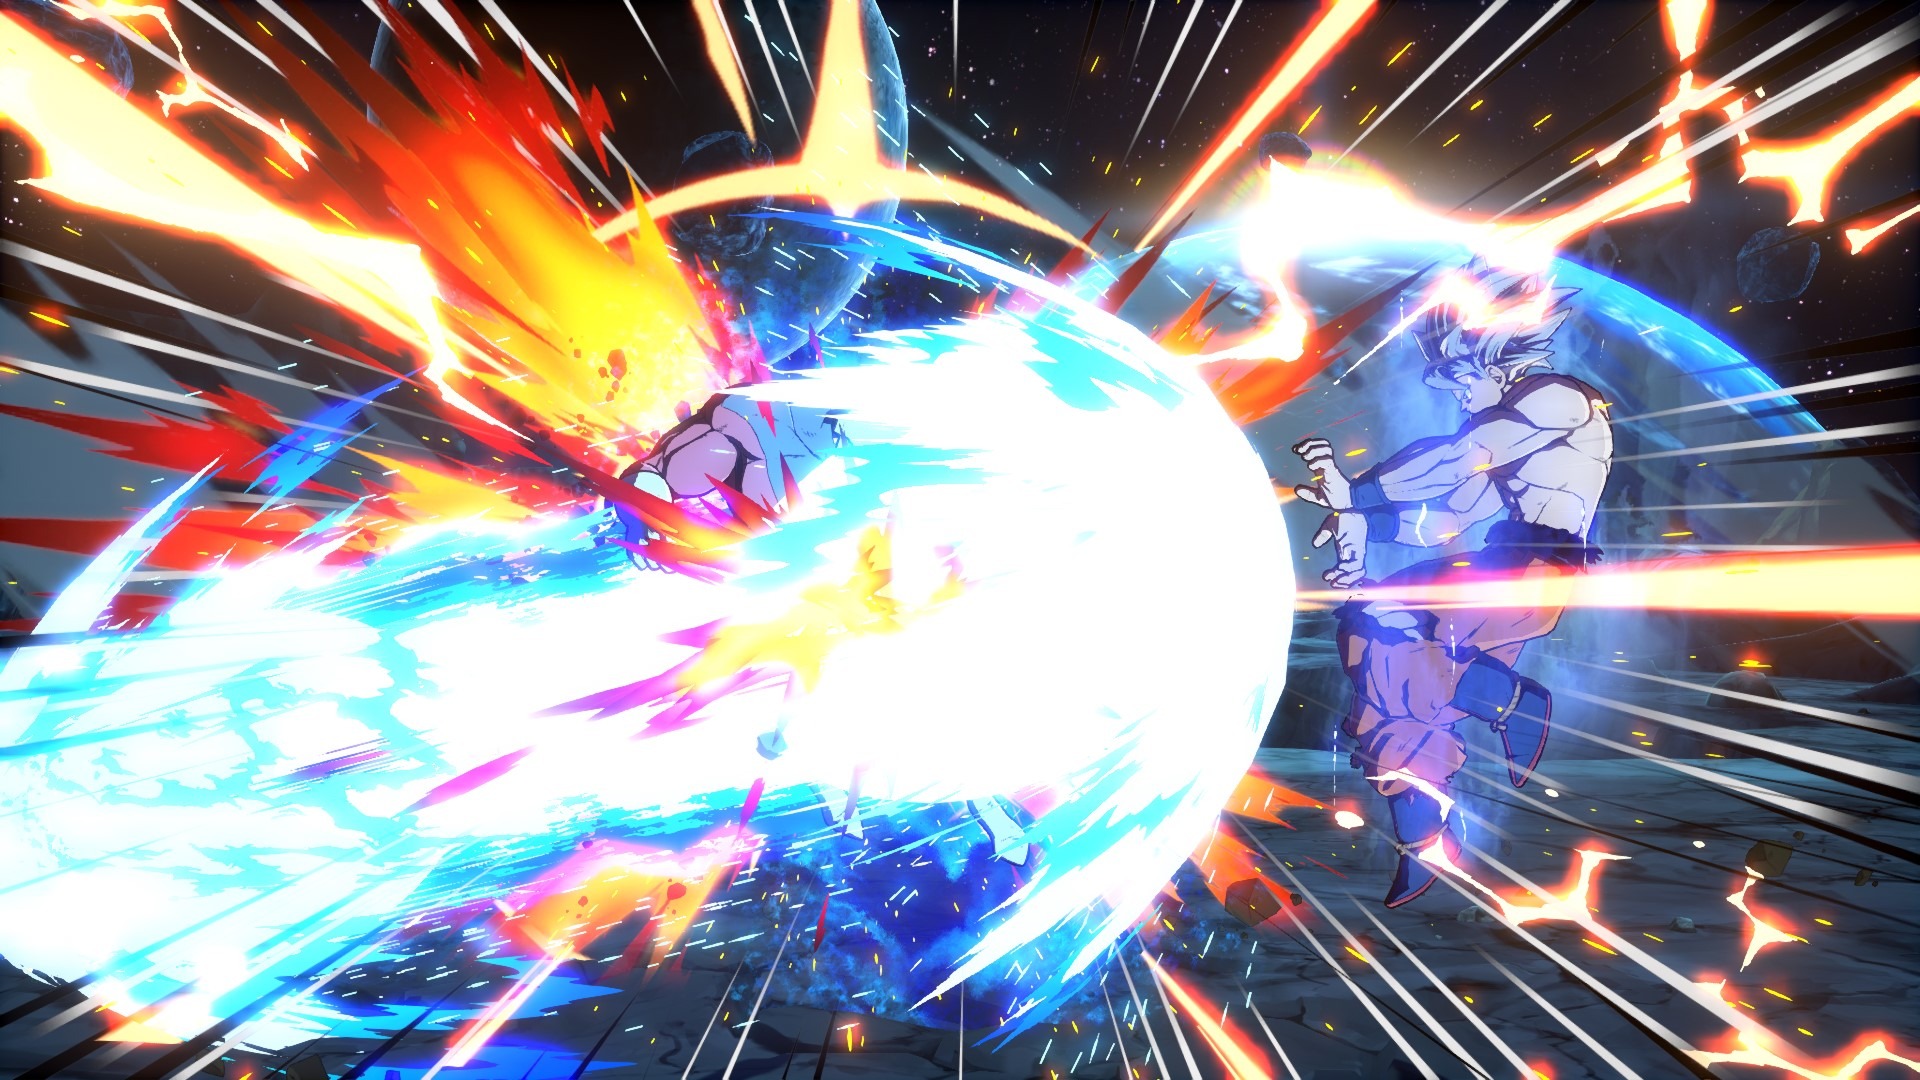 《七龍珠FighterZ》DLC自在極意功悟空截圖展示